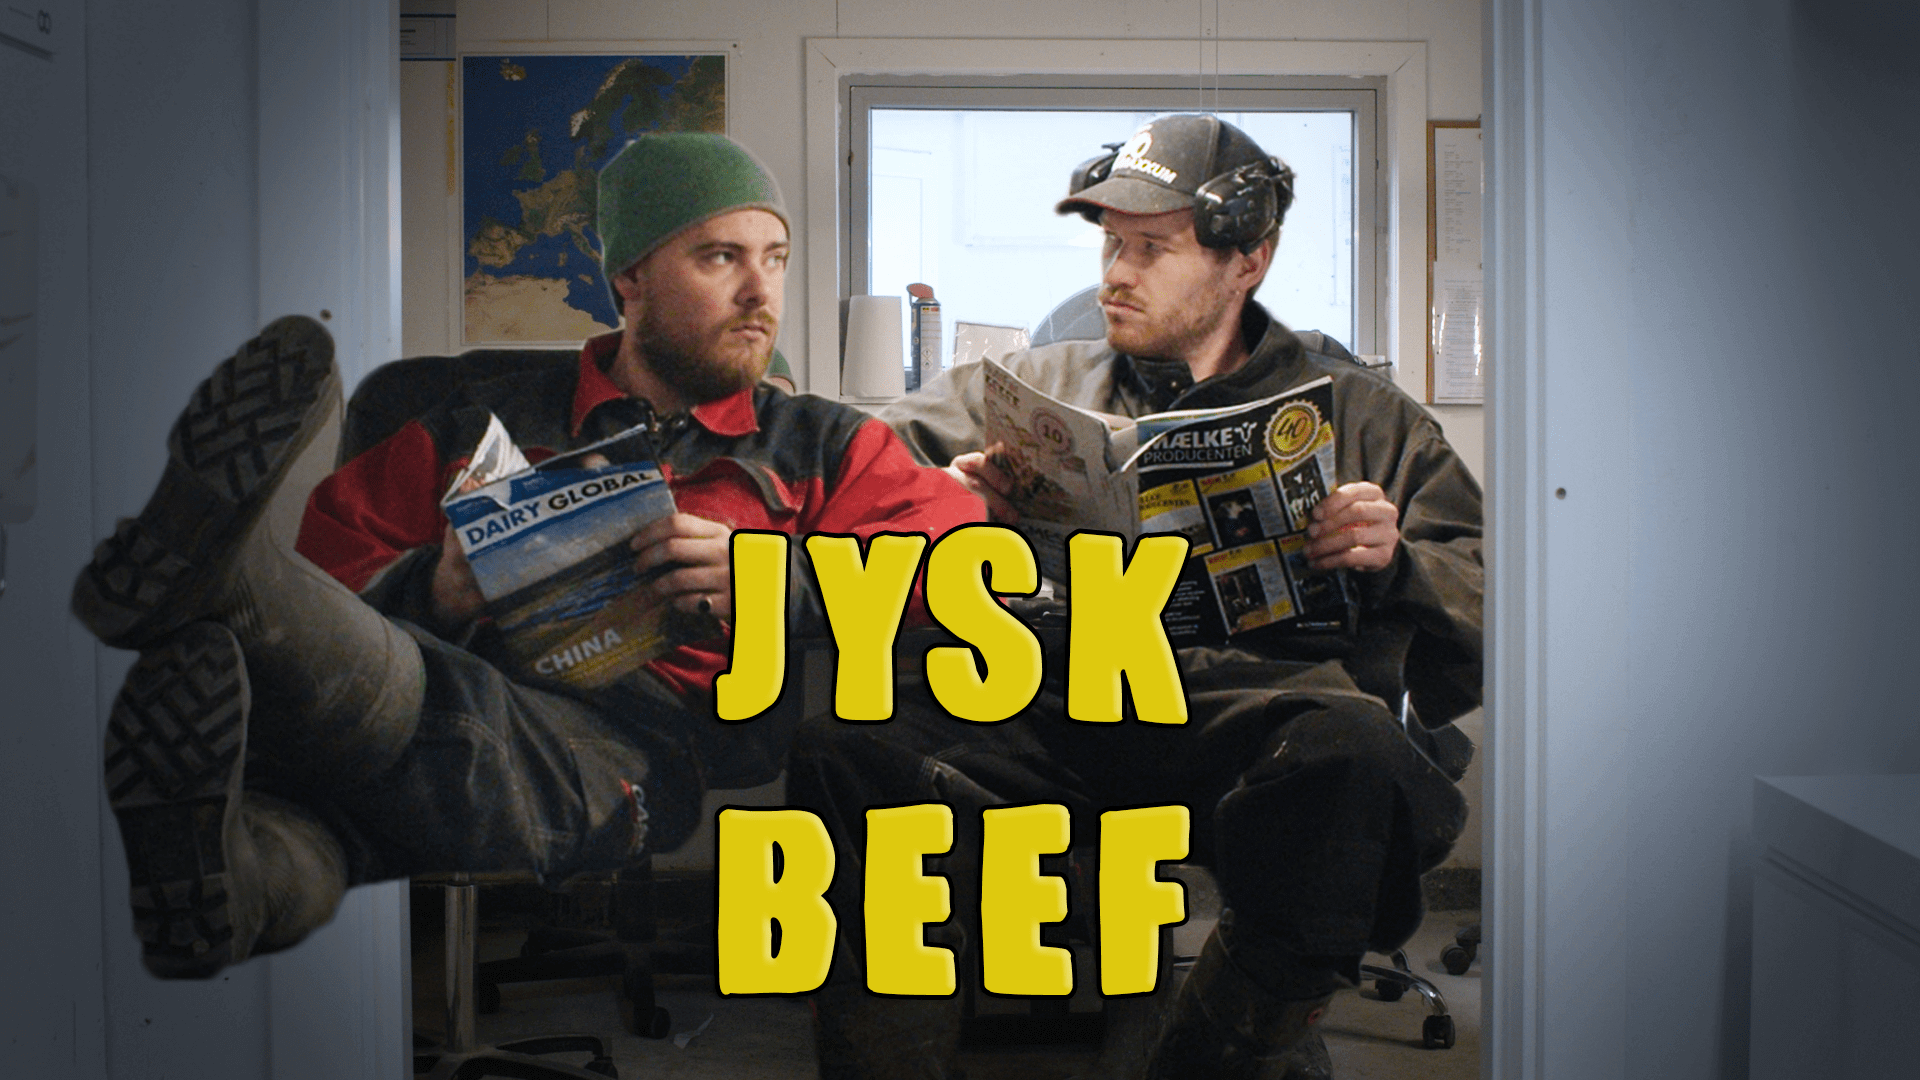 Jysk Beef - Klamedia Indhold der Smitter